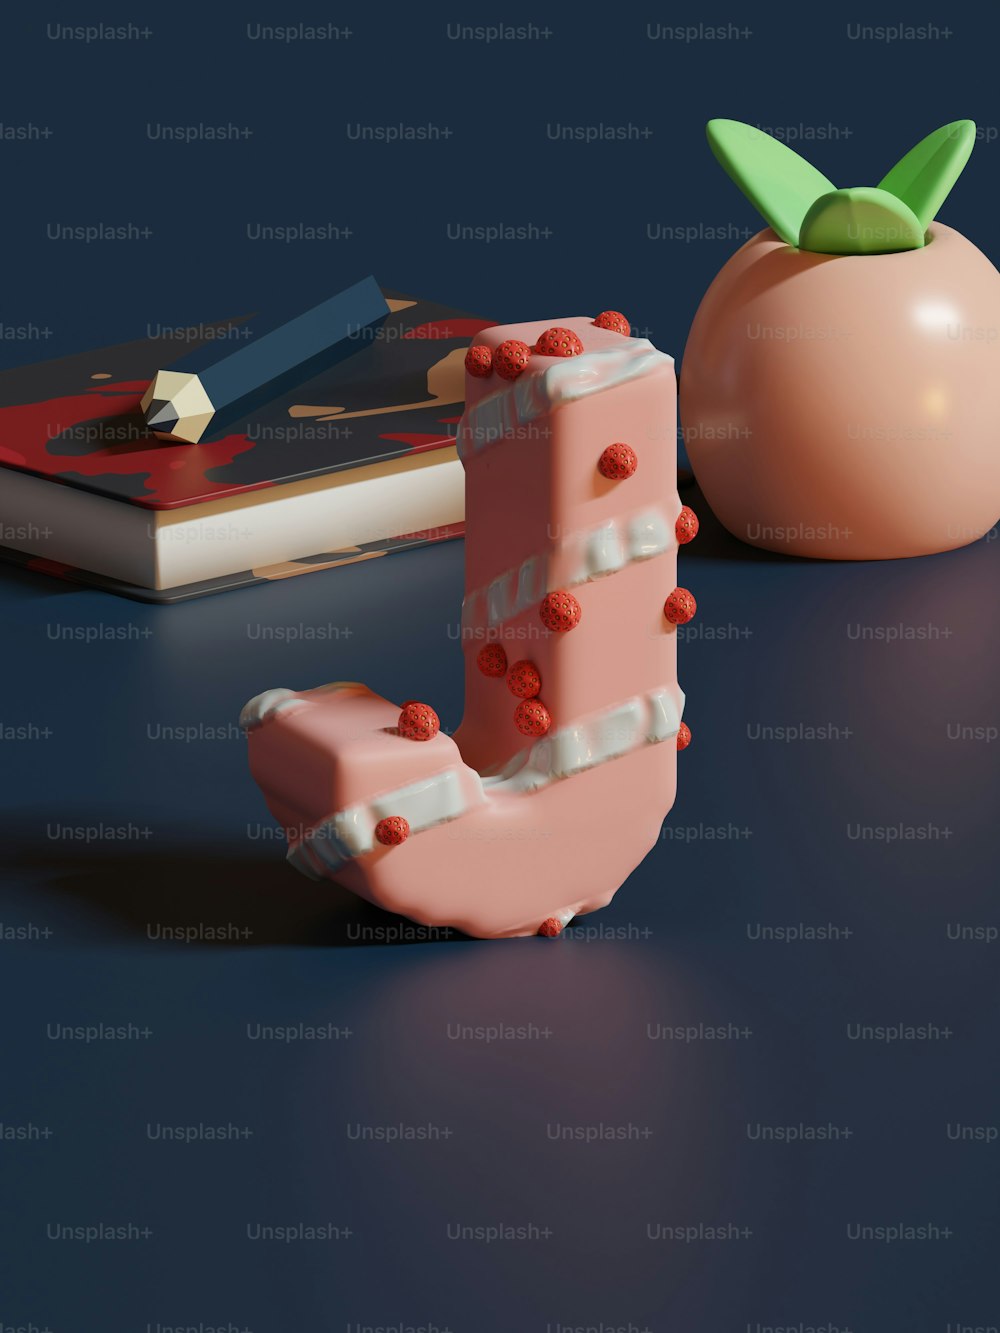 테이블 위의 책 옆에 앉아 있는 분홍색 물체